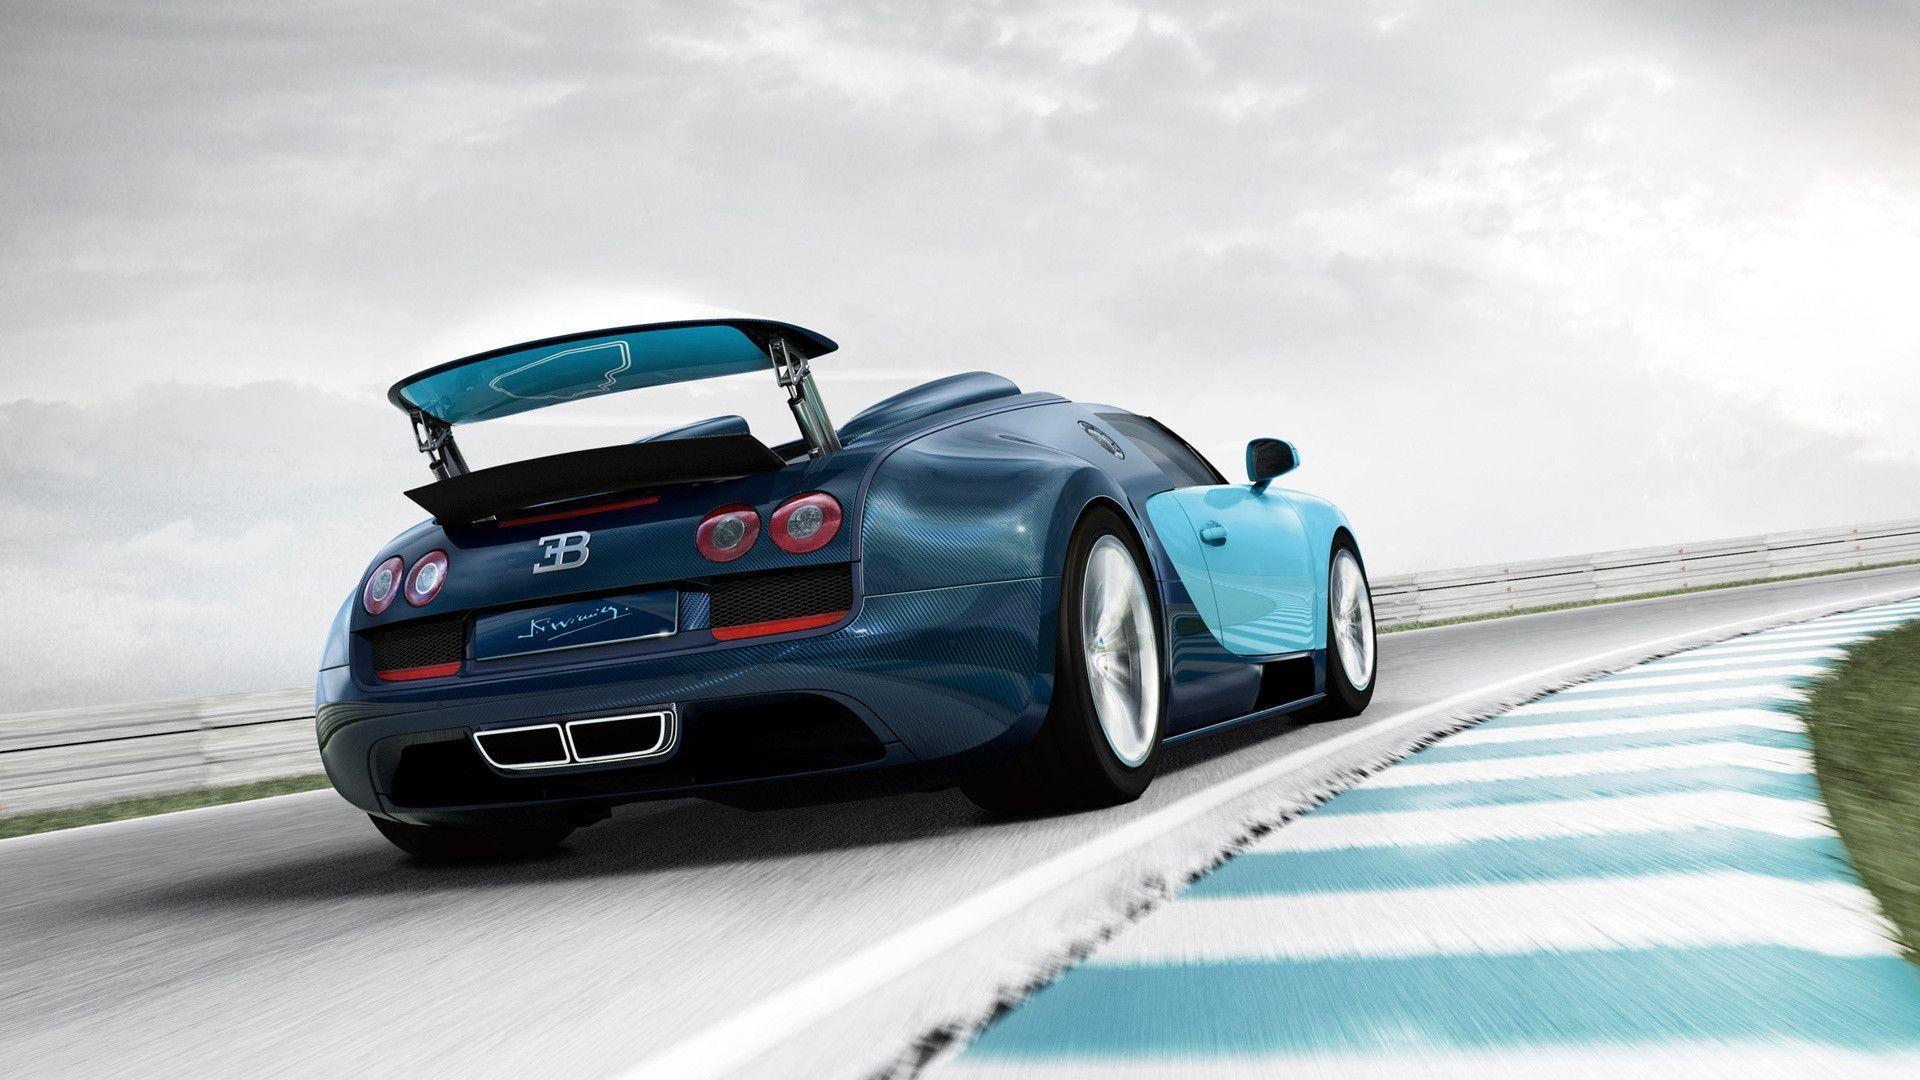 Bugatti Veyron Grand Sport widescreen Wallpaper. HD Wallpaper